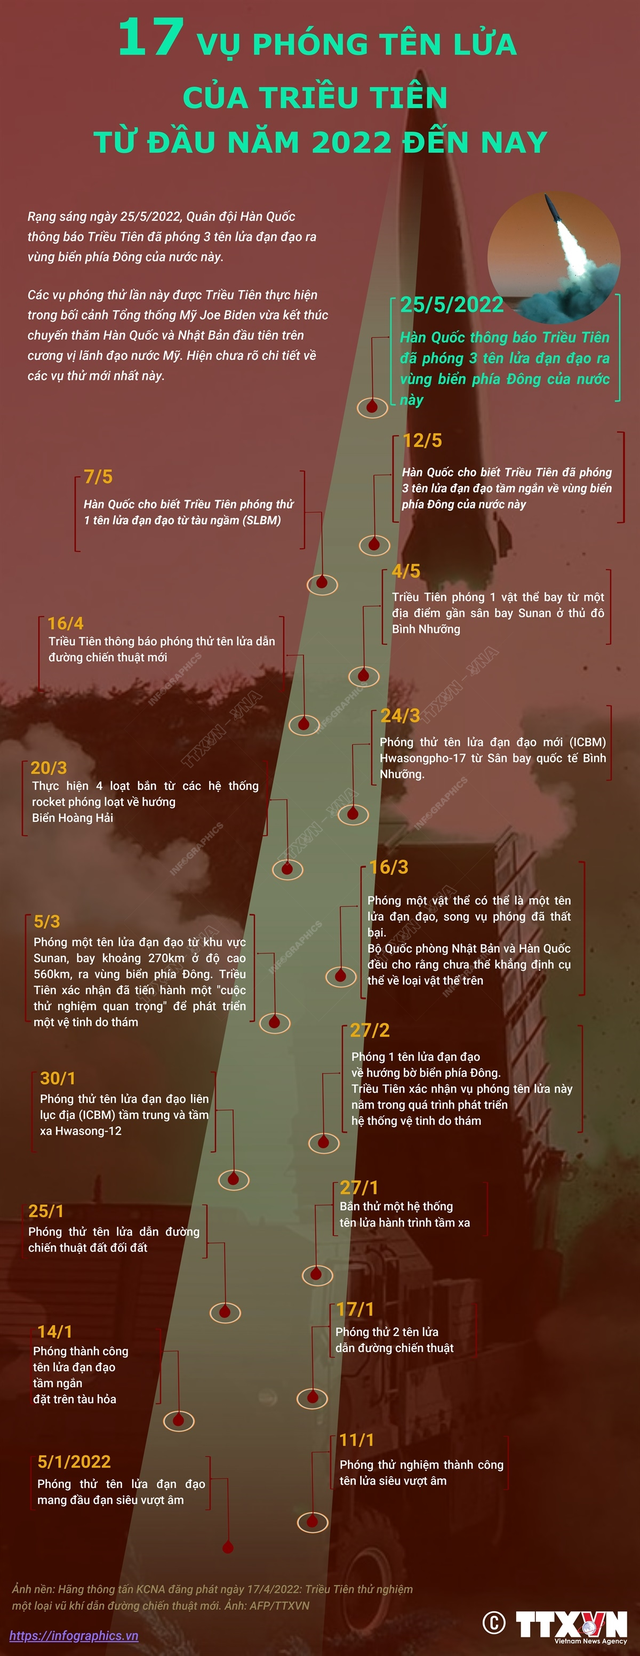 [Infographic] 17 vụ phóng tên lửa của Triều Tiên kể từ đầu năm 2022 - Ảnh 1.